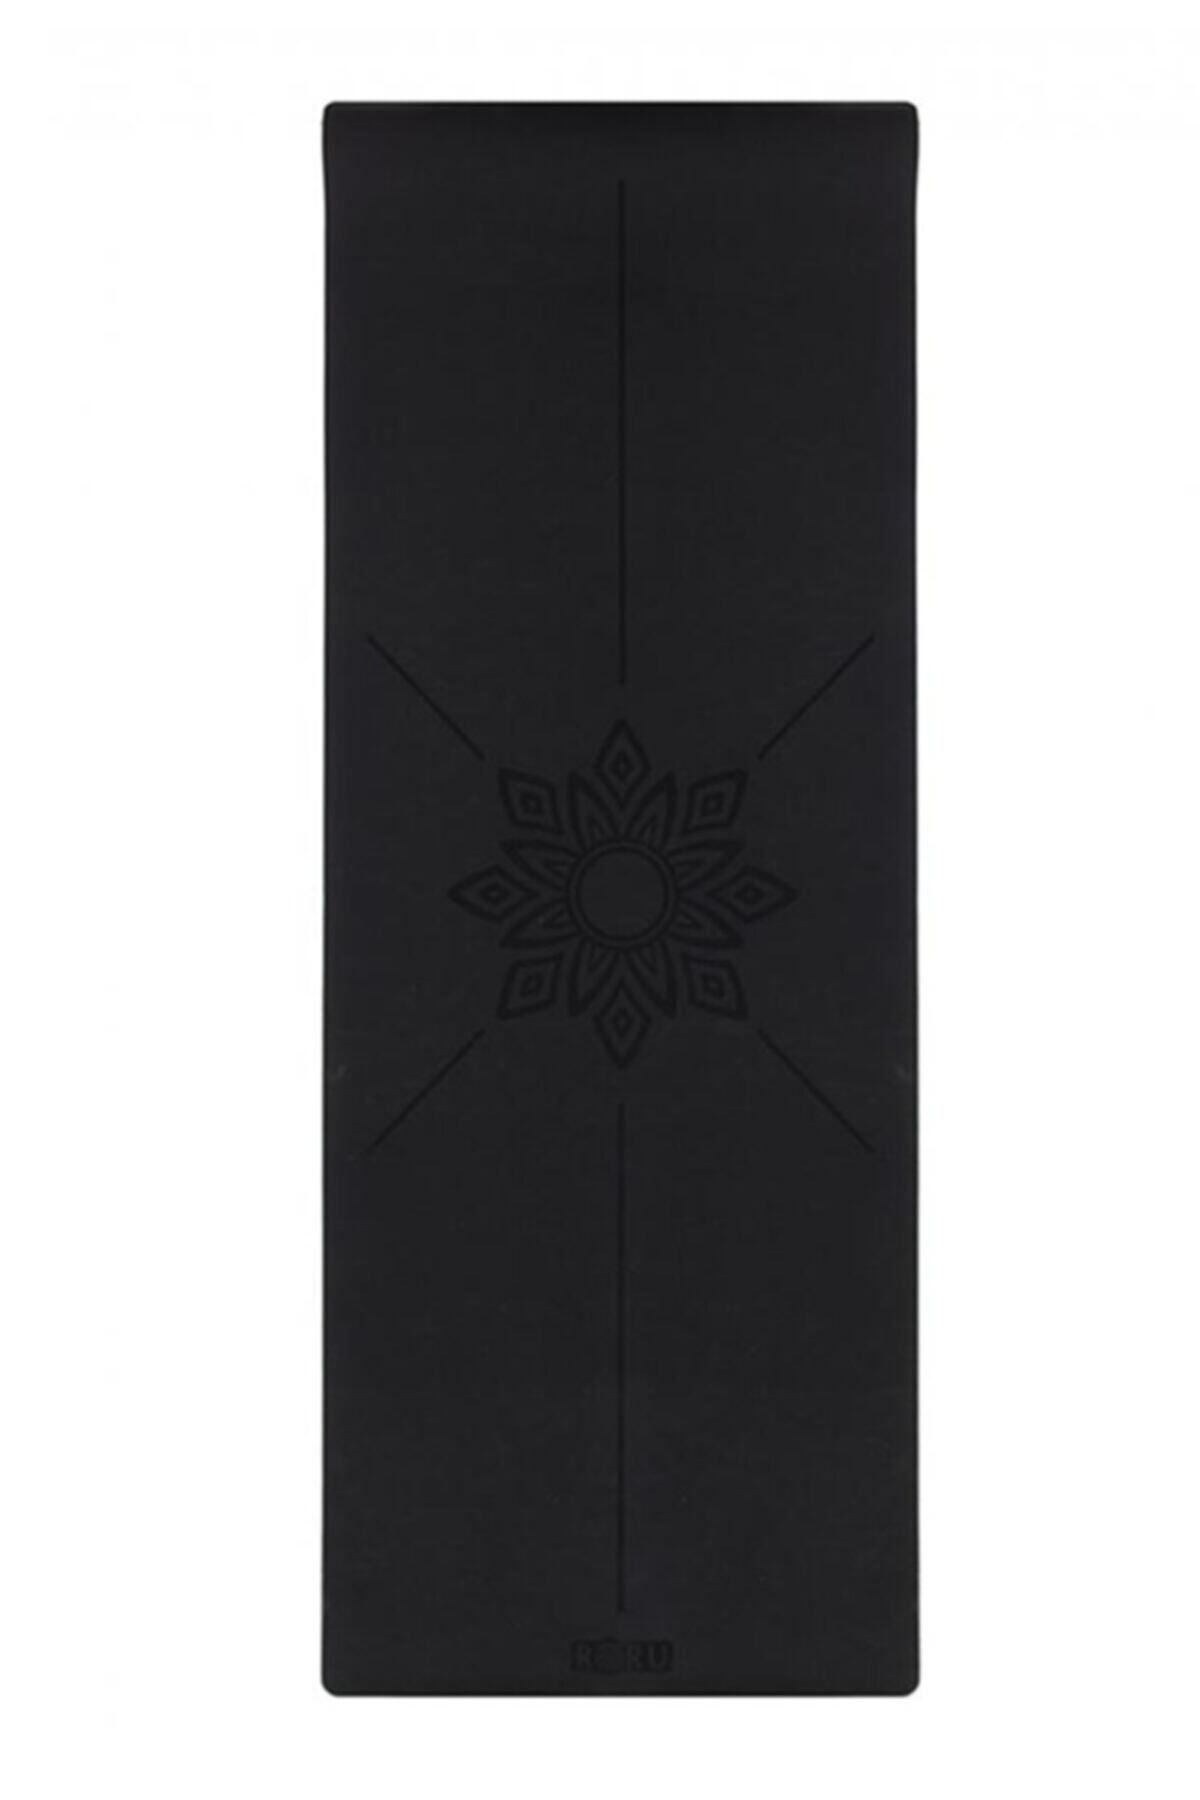 Roru Concept Sun Series Kaydırmaz 5mm Yoga Matı Siyah/